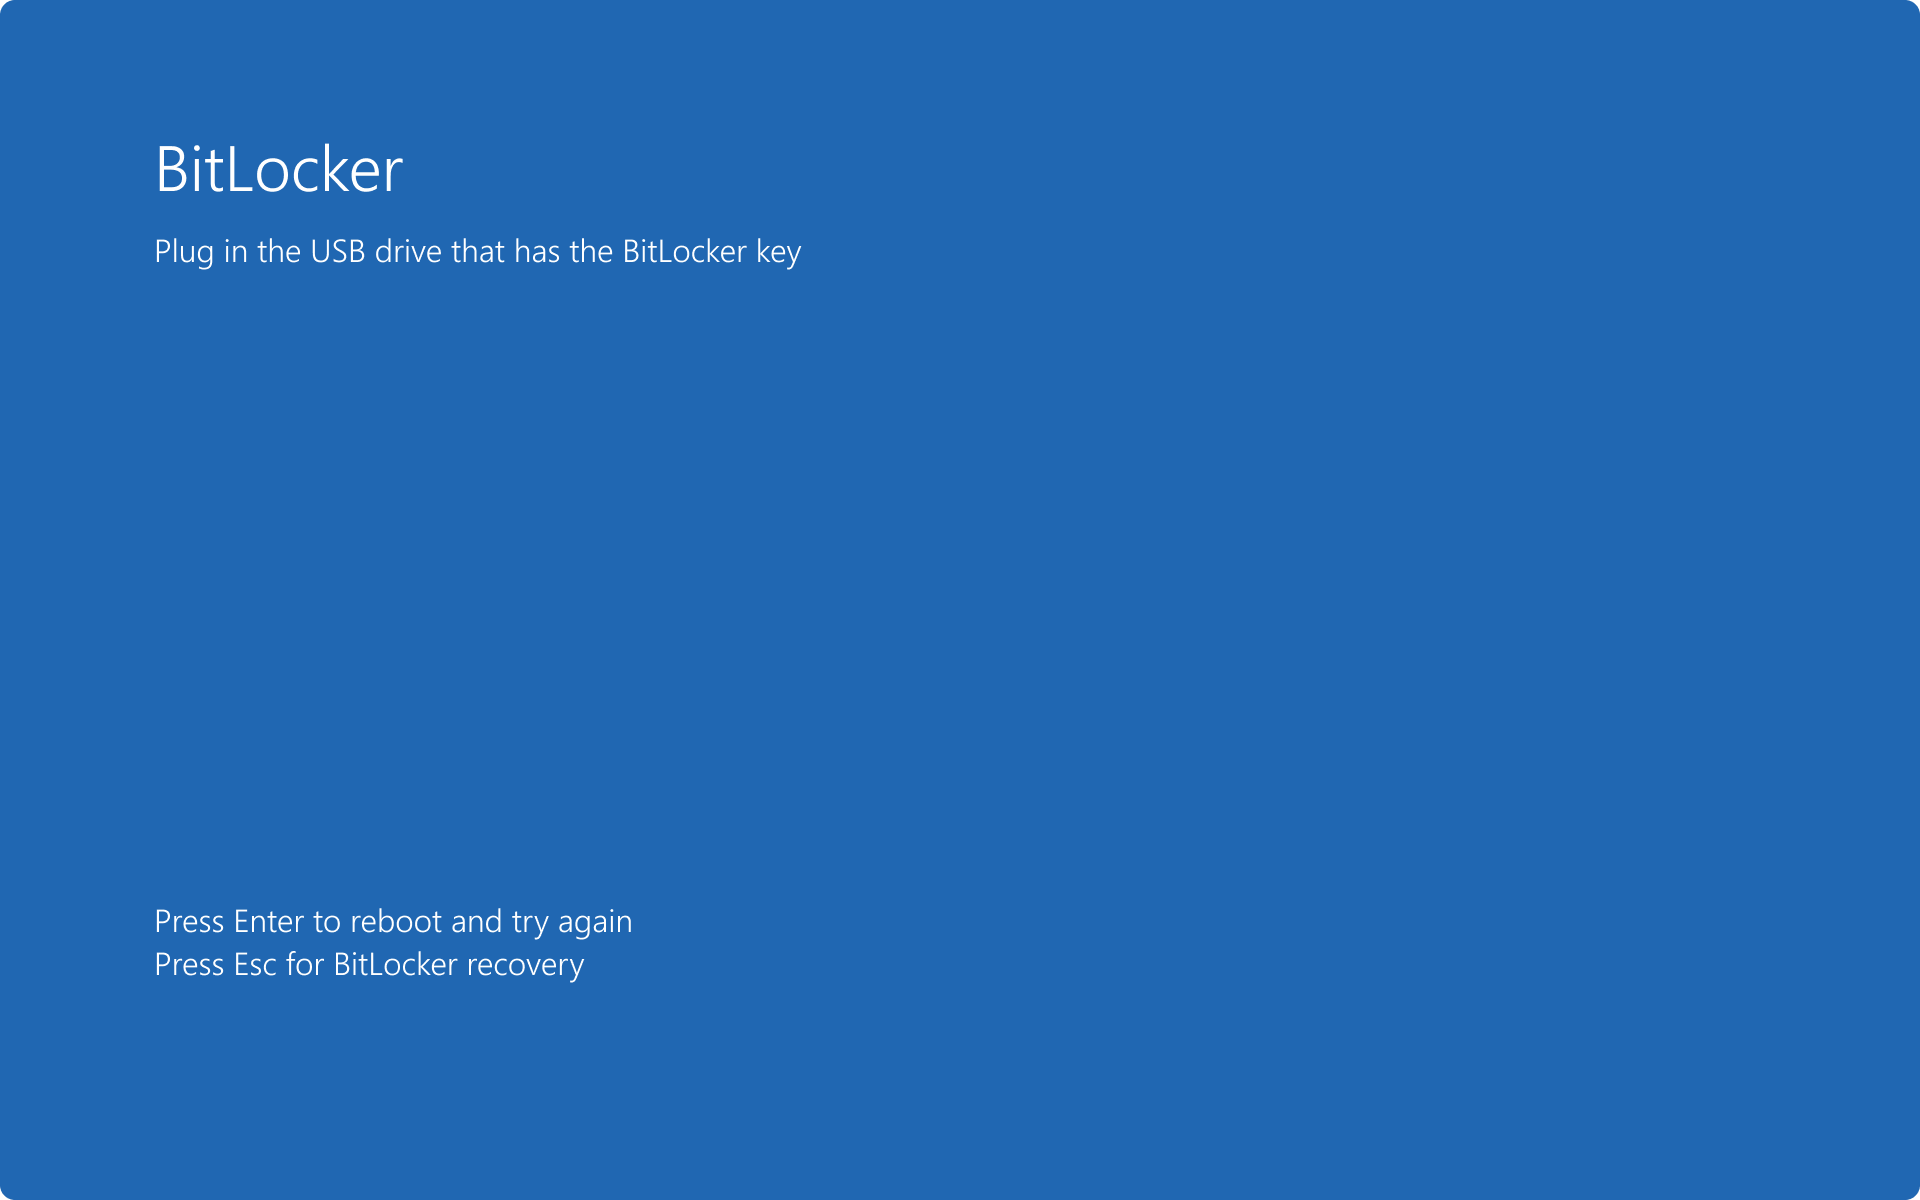 Captura de pantalla de la pantalla de inicio previo de BitLocker en la que se solicita una unidad USB que contenga la clave de inicio.